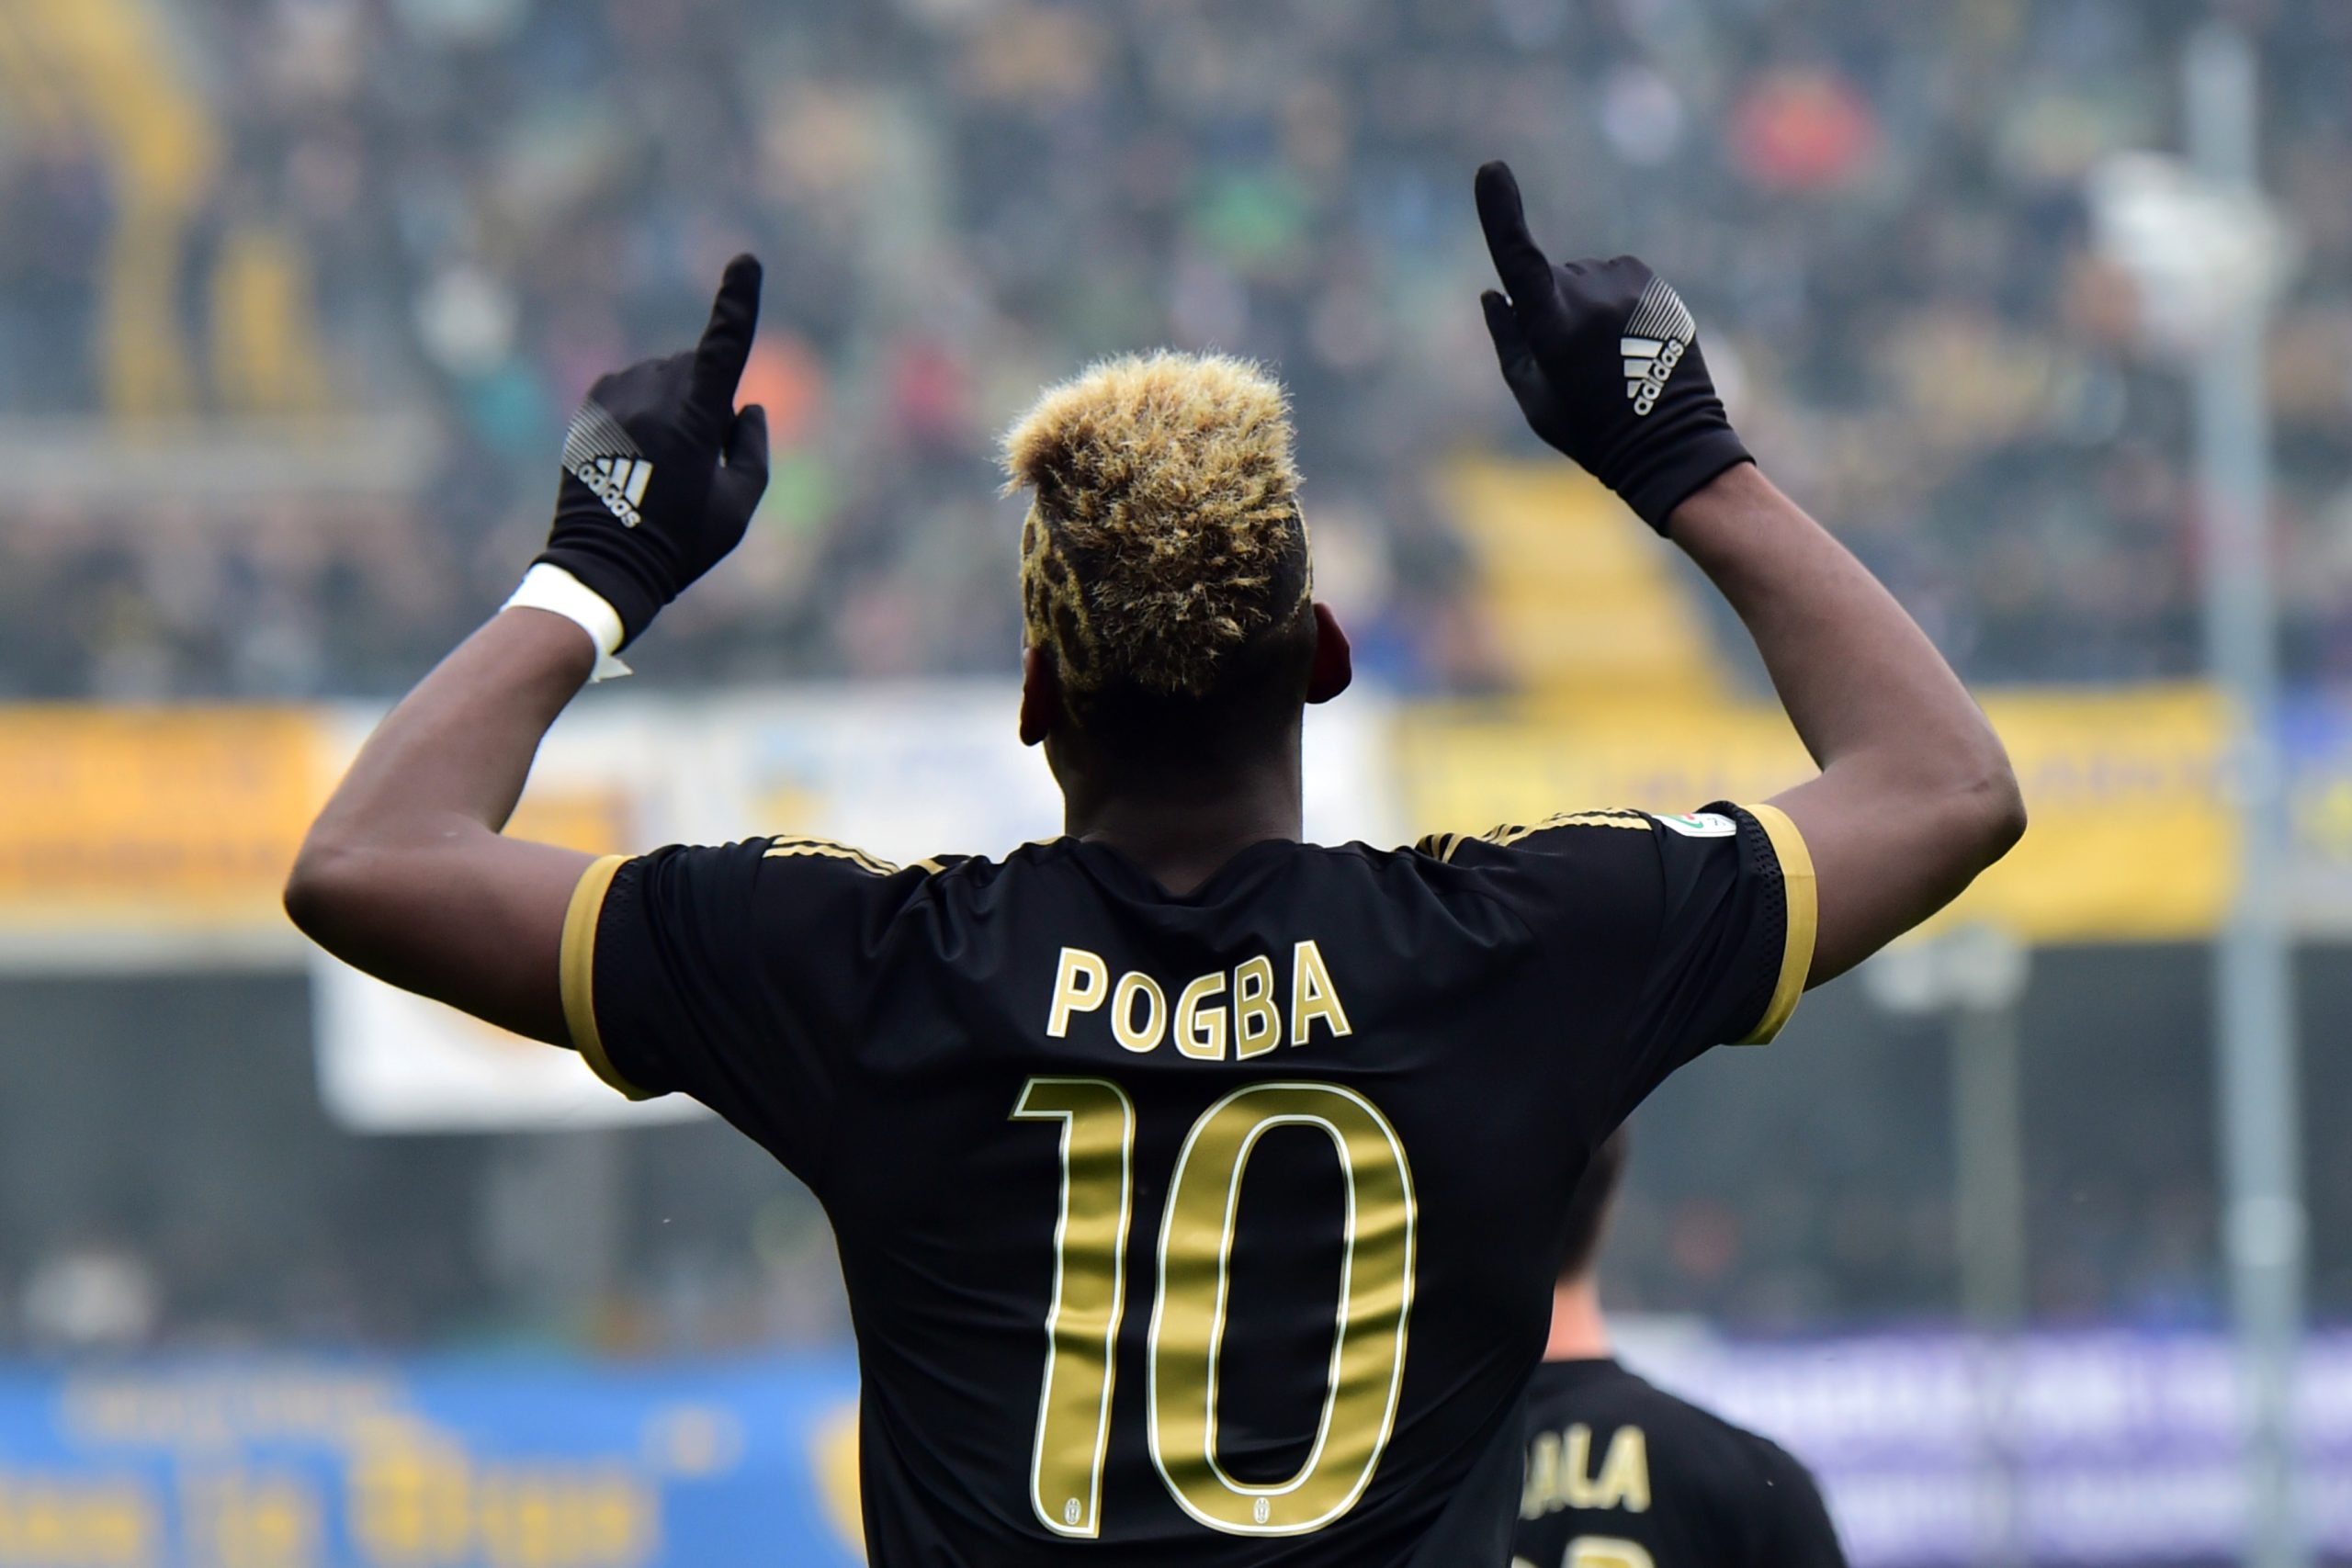 Da Torino – Pogba torna in gruppo, nel mirino il match contro il Napoli